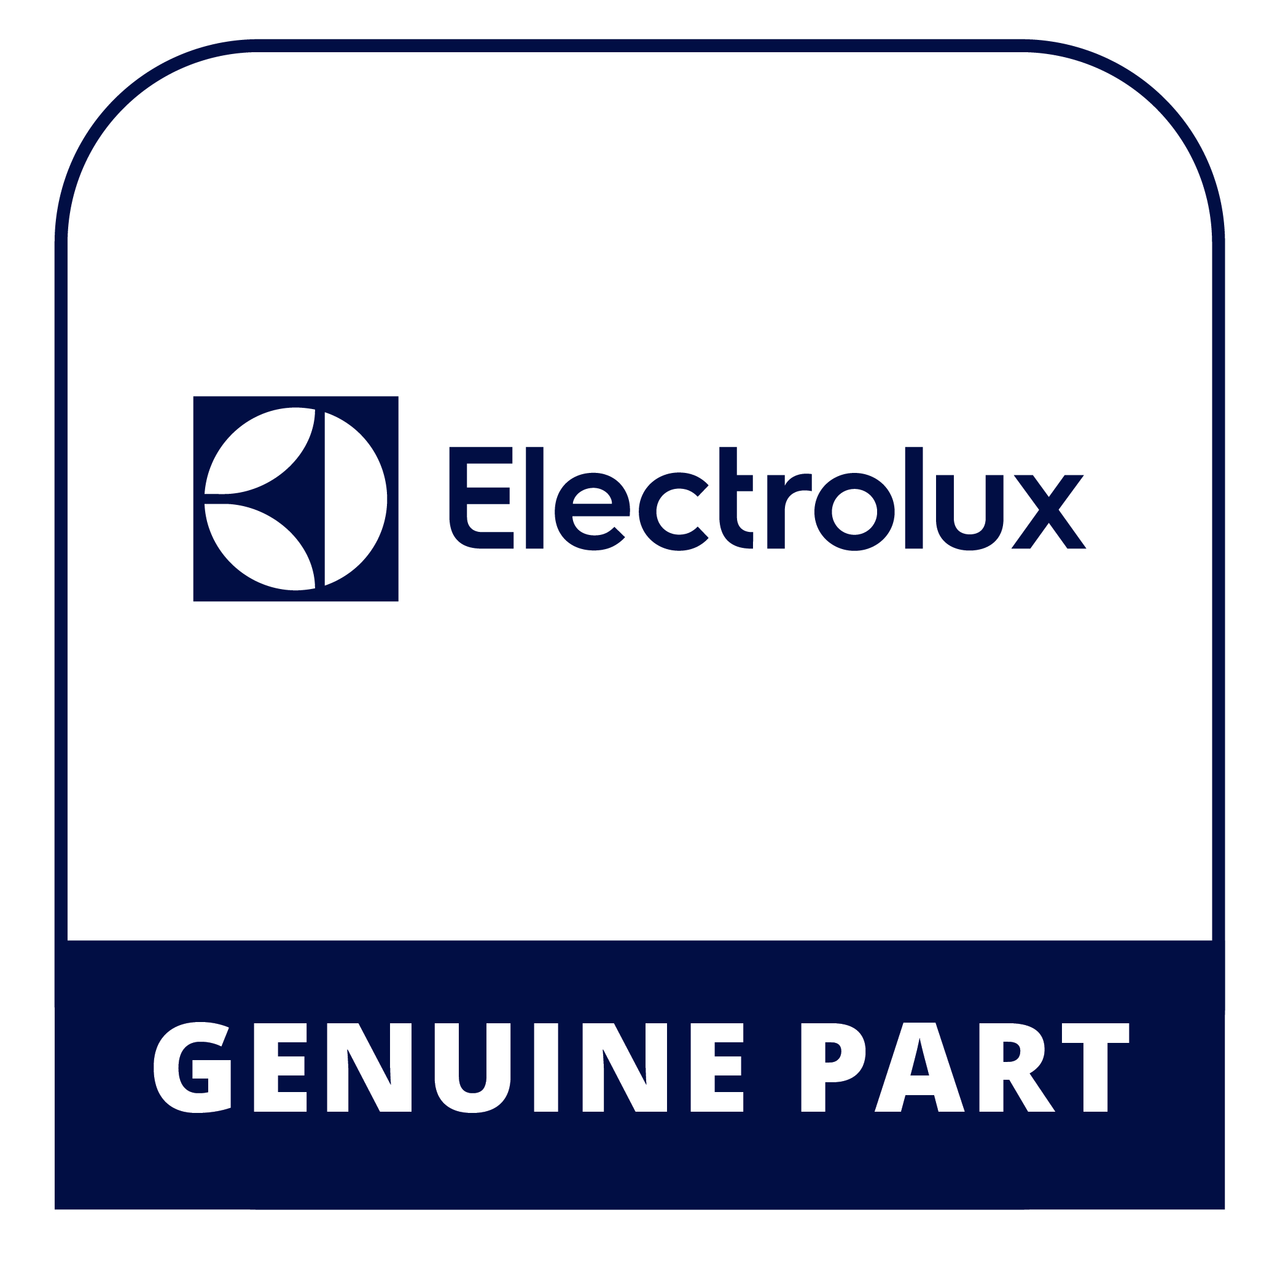 Frigidaire - Electrolux 5304490023 Switch - Genuine Electrolux Part